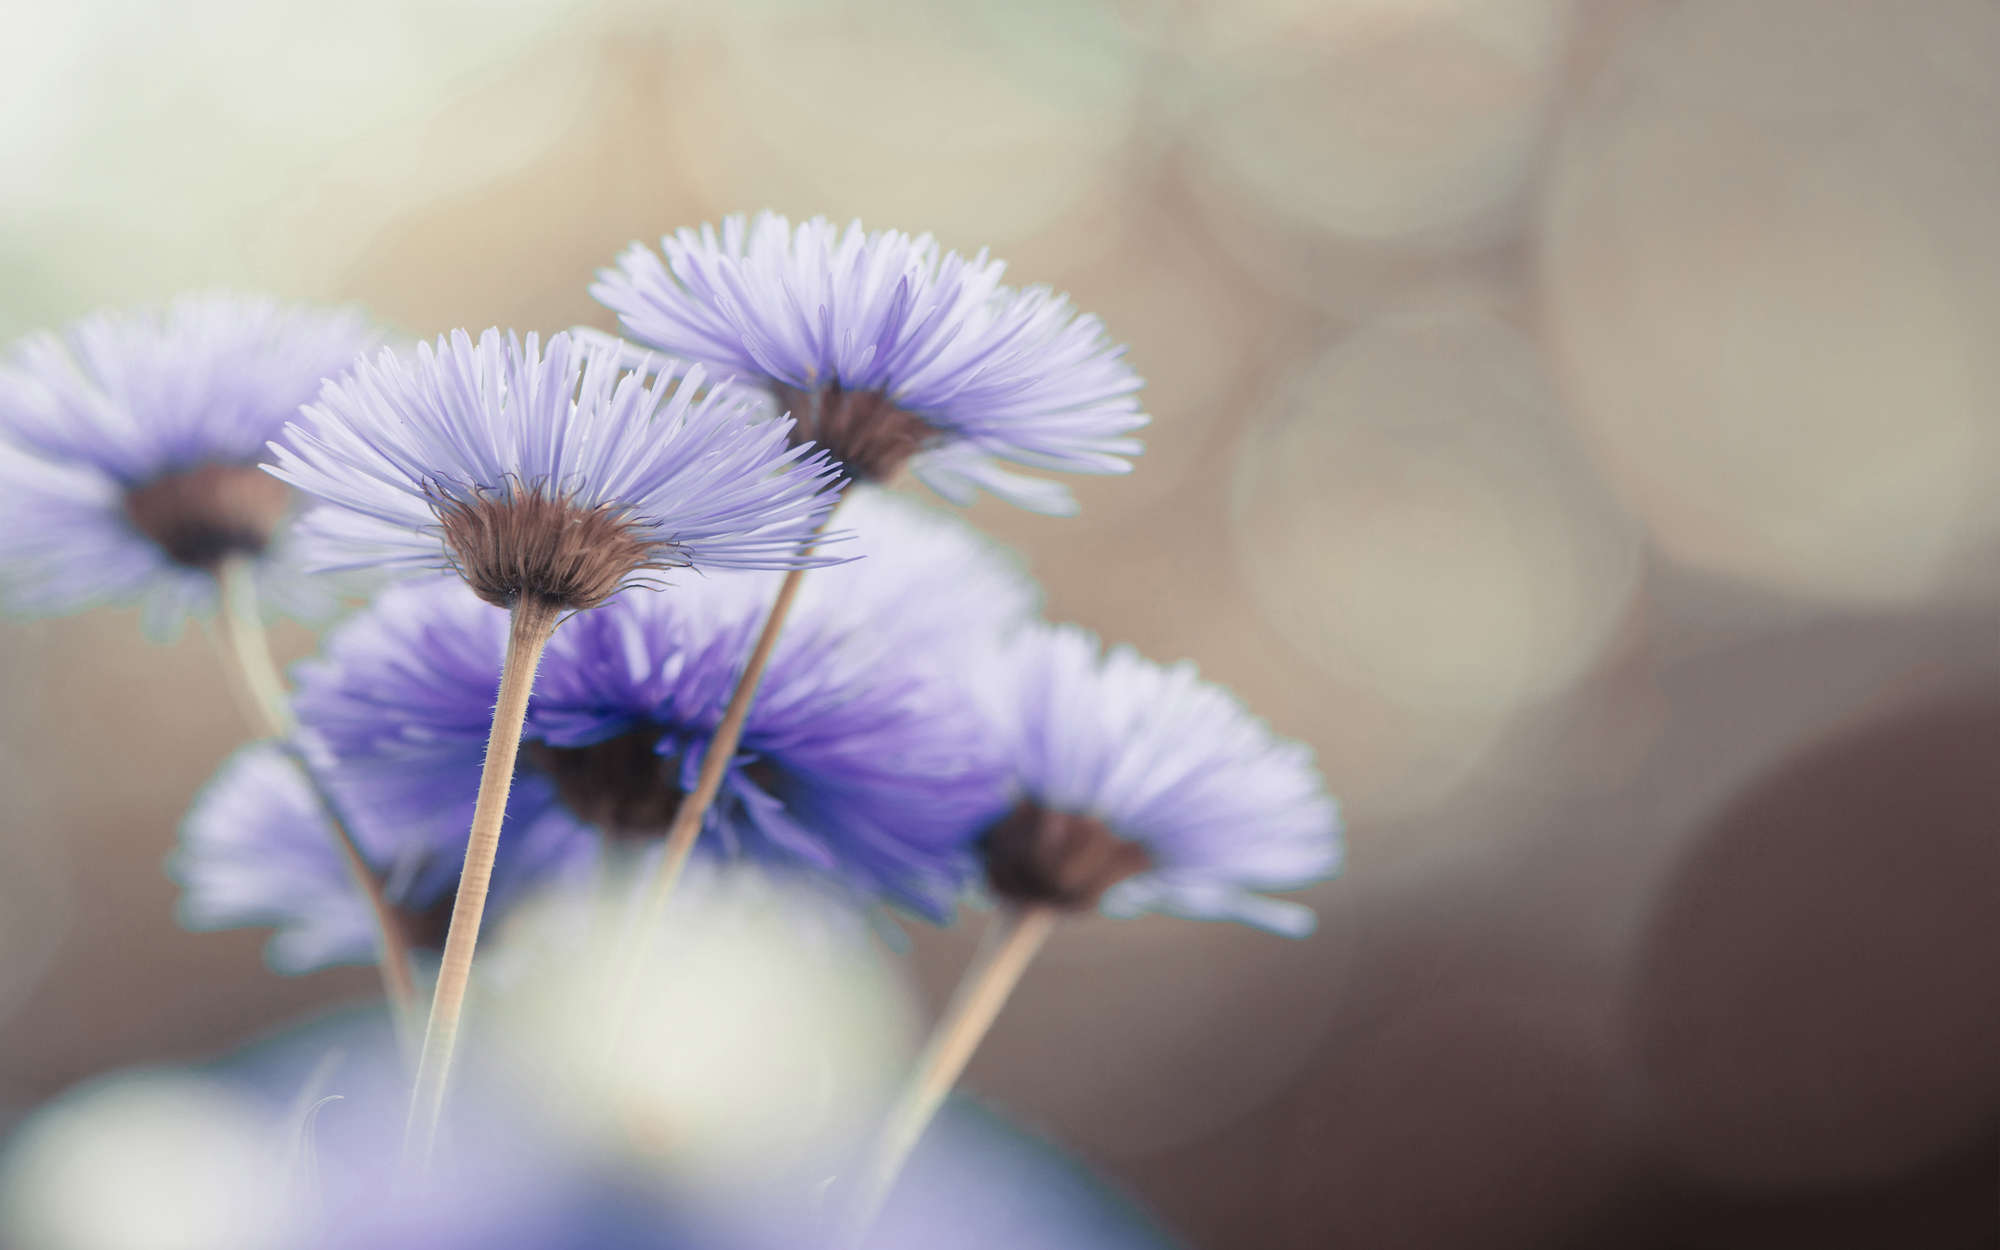             Fototapete Blumen in Violett – Mattes Glattvlies
        